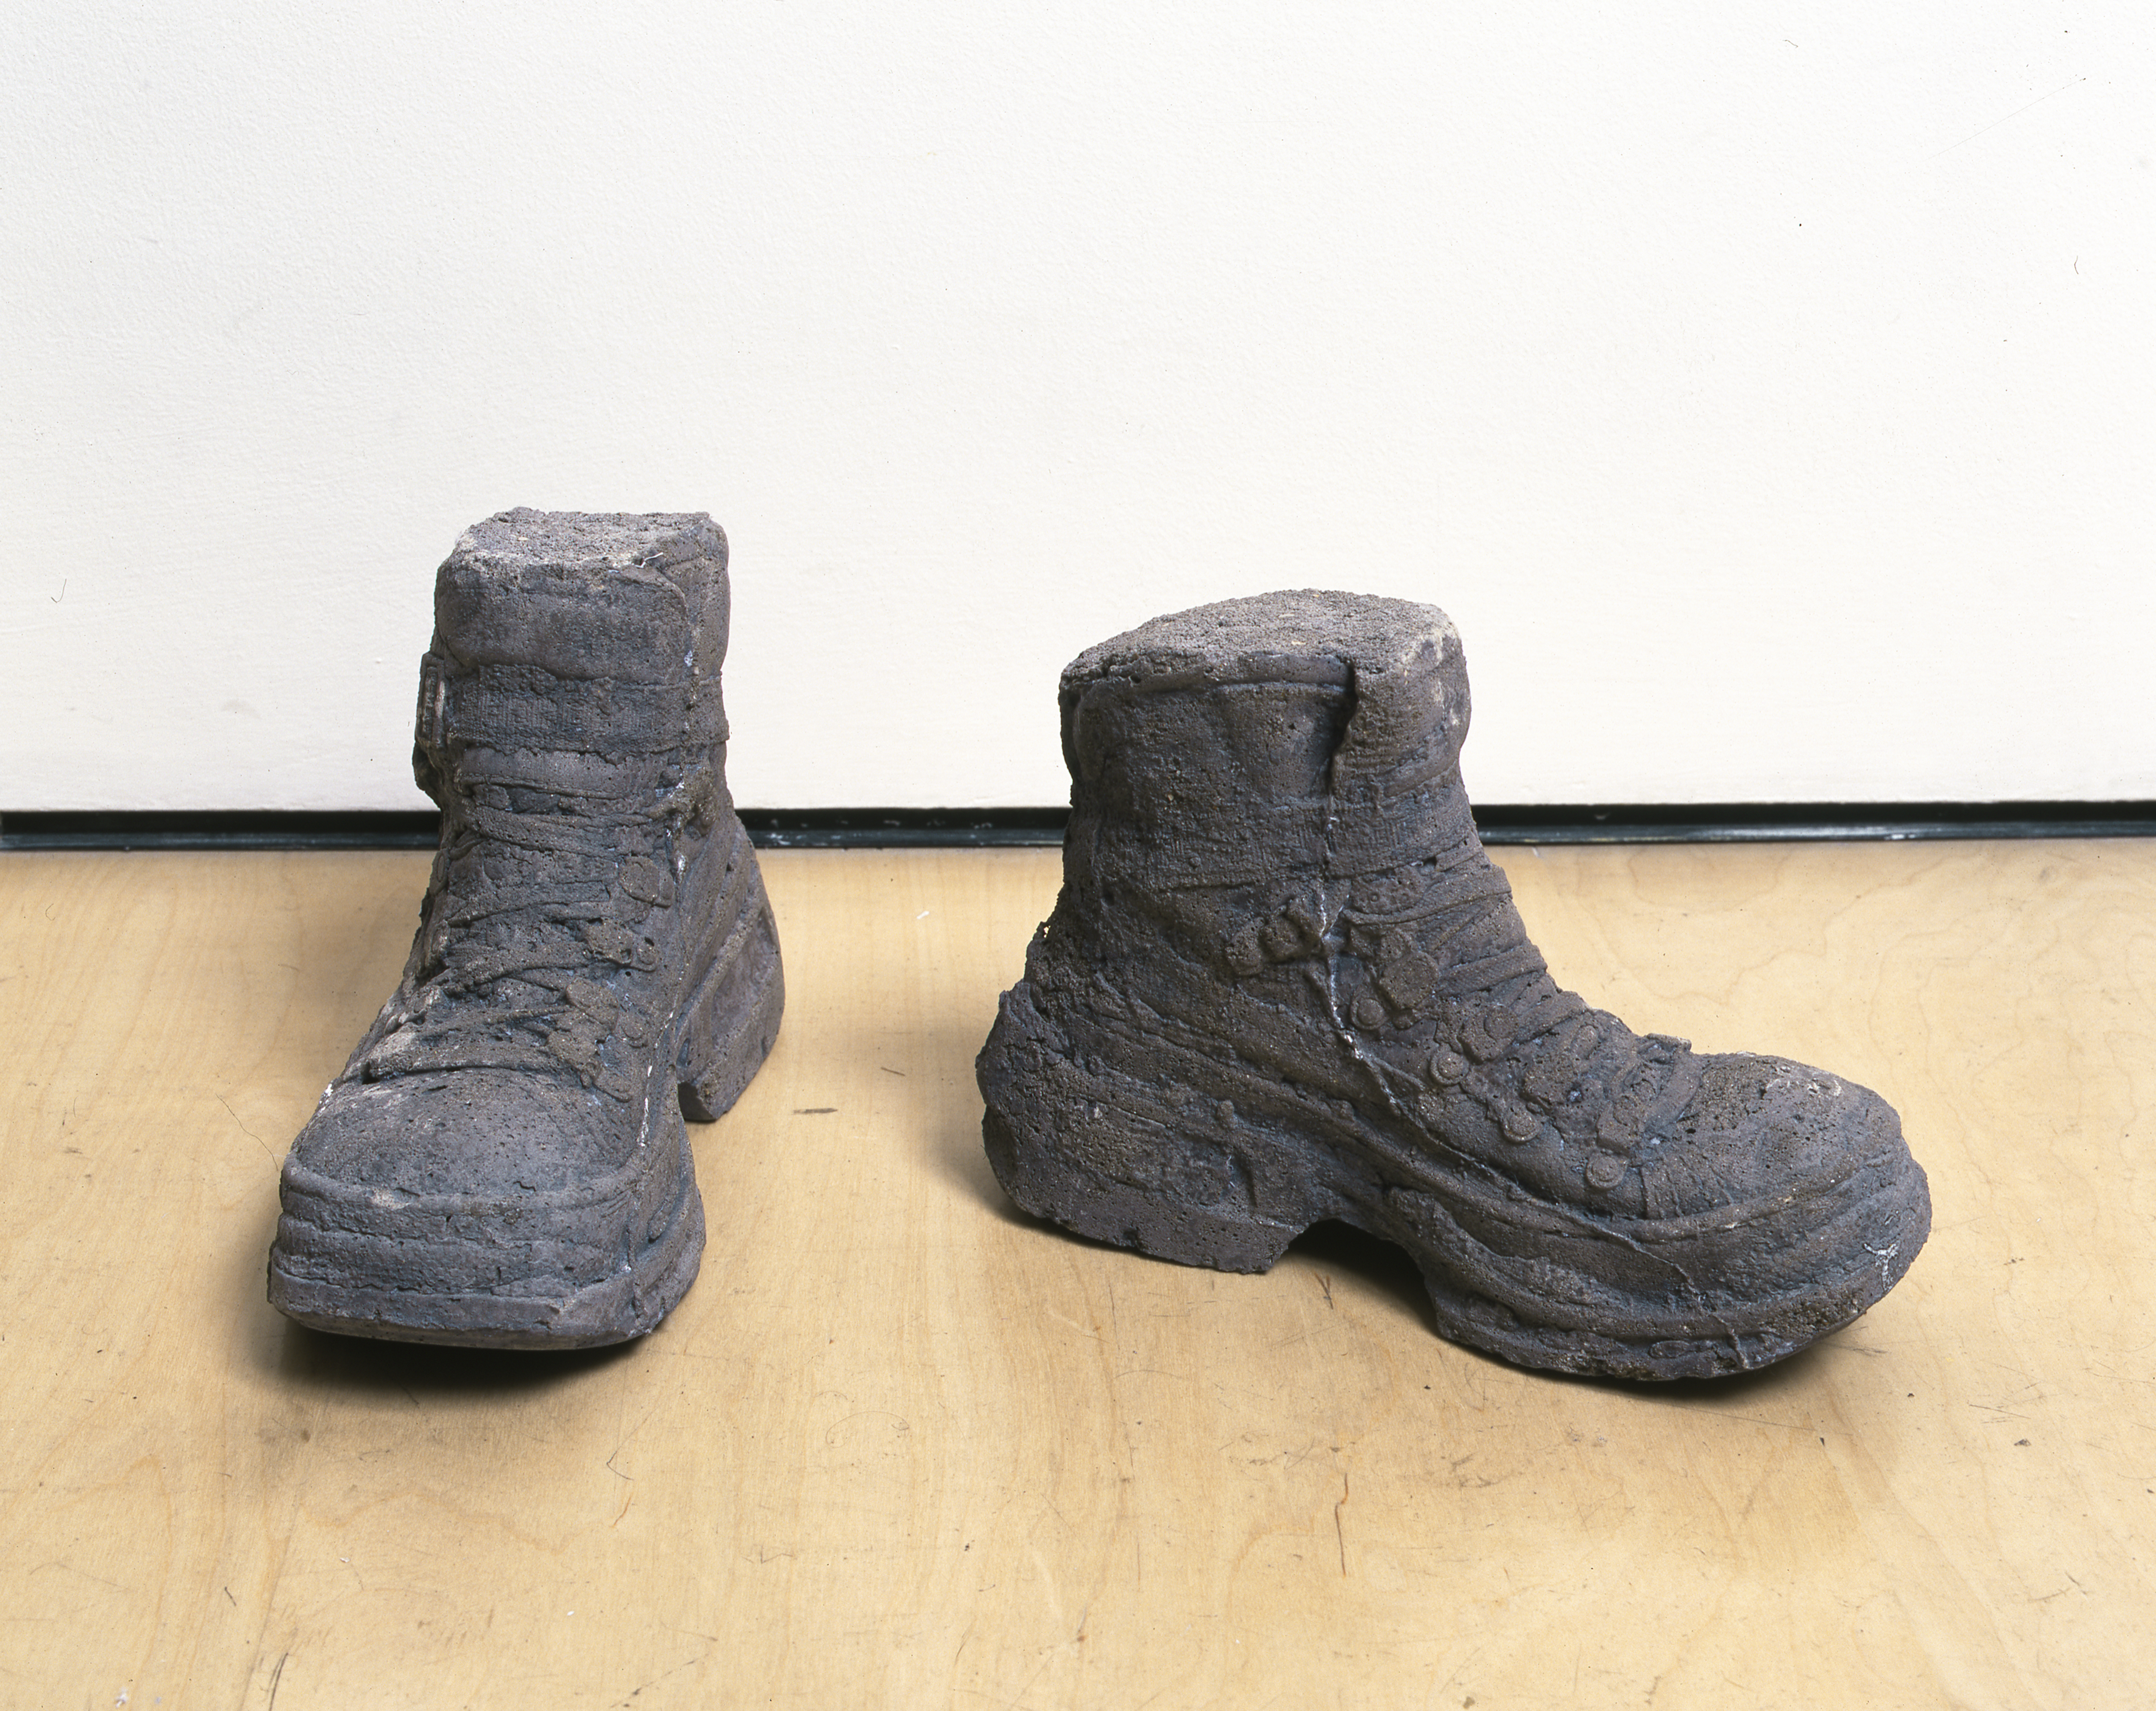 Sarah Lucas, Concrete Boots 98–99, 1999. Cast concrete, 7 5/8 x 5 1/8 x 11 in (19.4 x 13 x